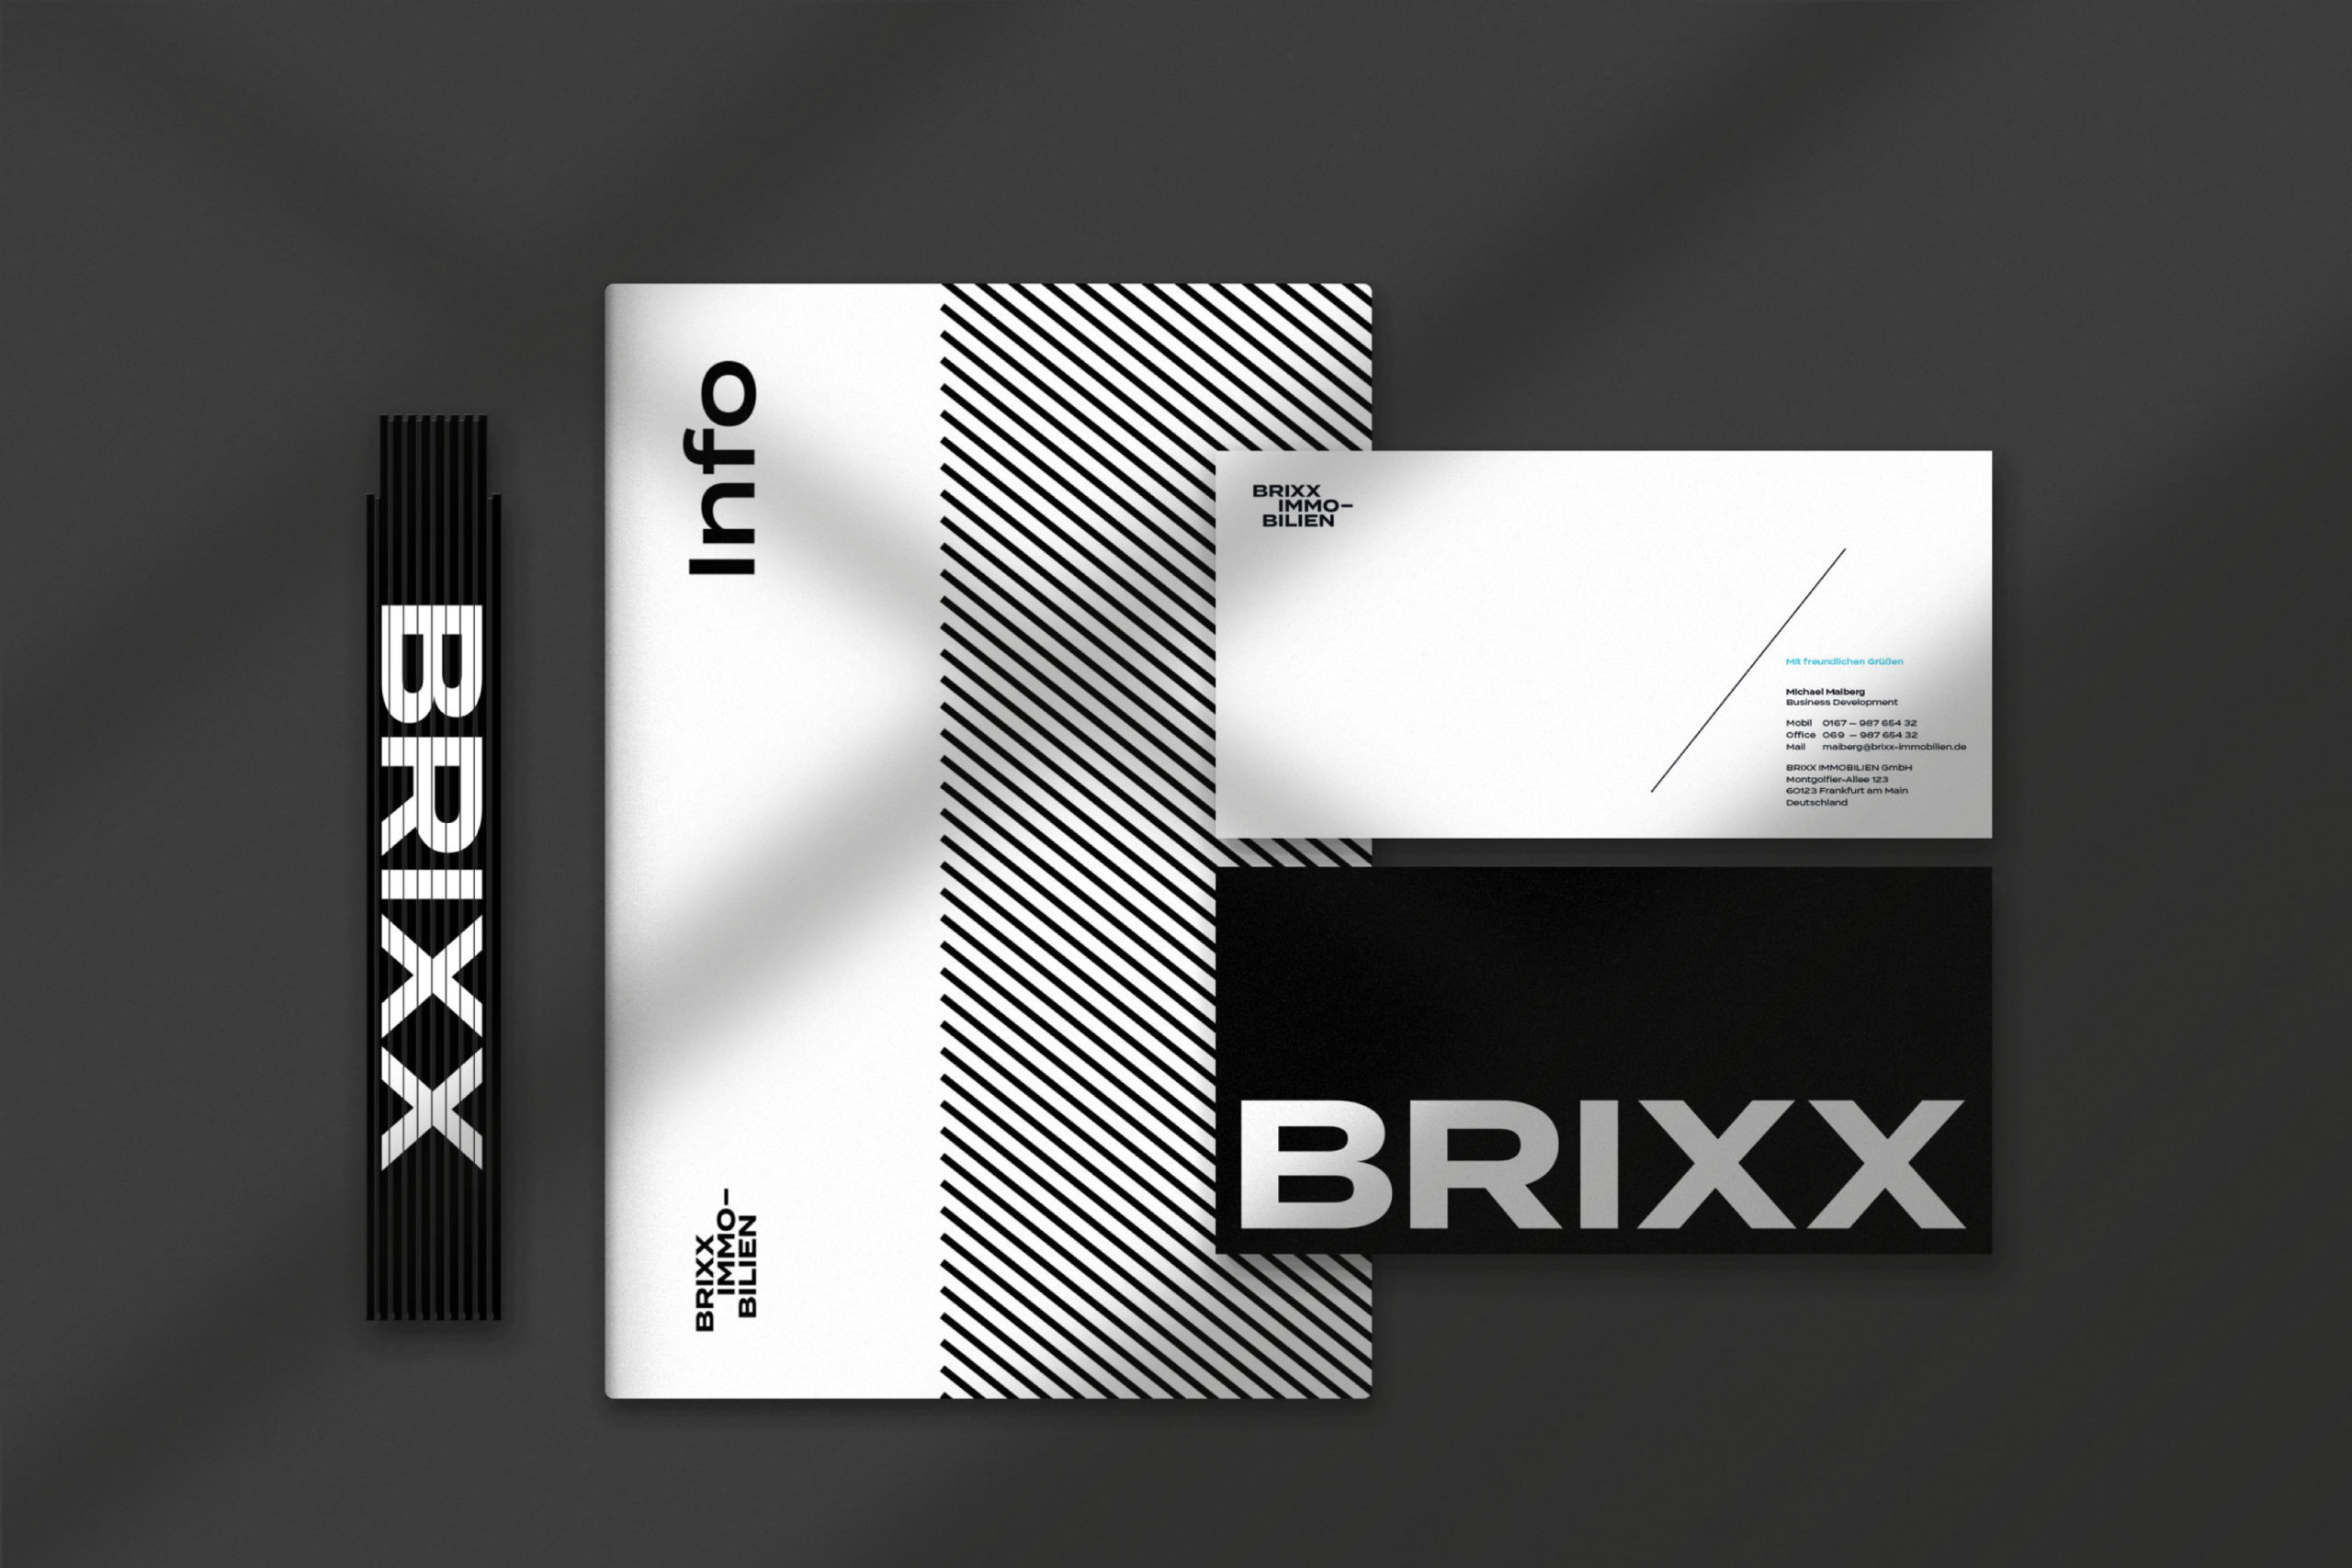 BRIXX CONDO Immobilien Corporate Design, Corporate Design Agentur, Designagentur Frankfurt, Grafikdesign, Logodesign, Branding, Webdesign